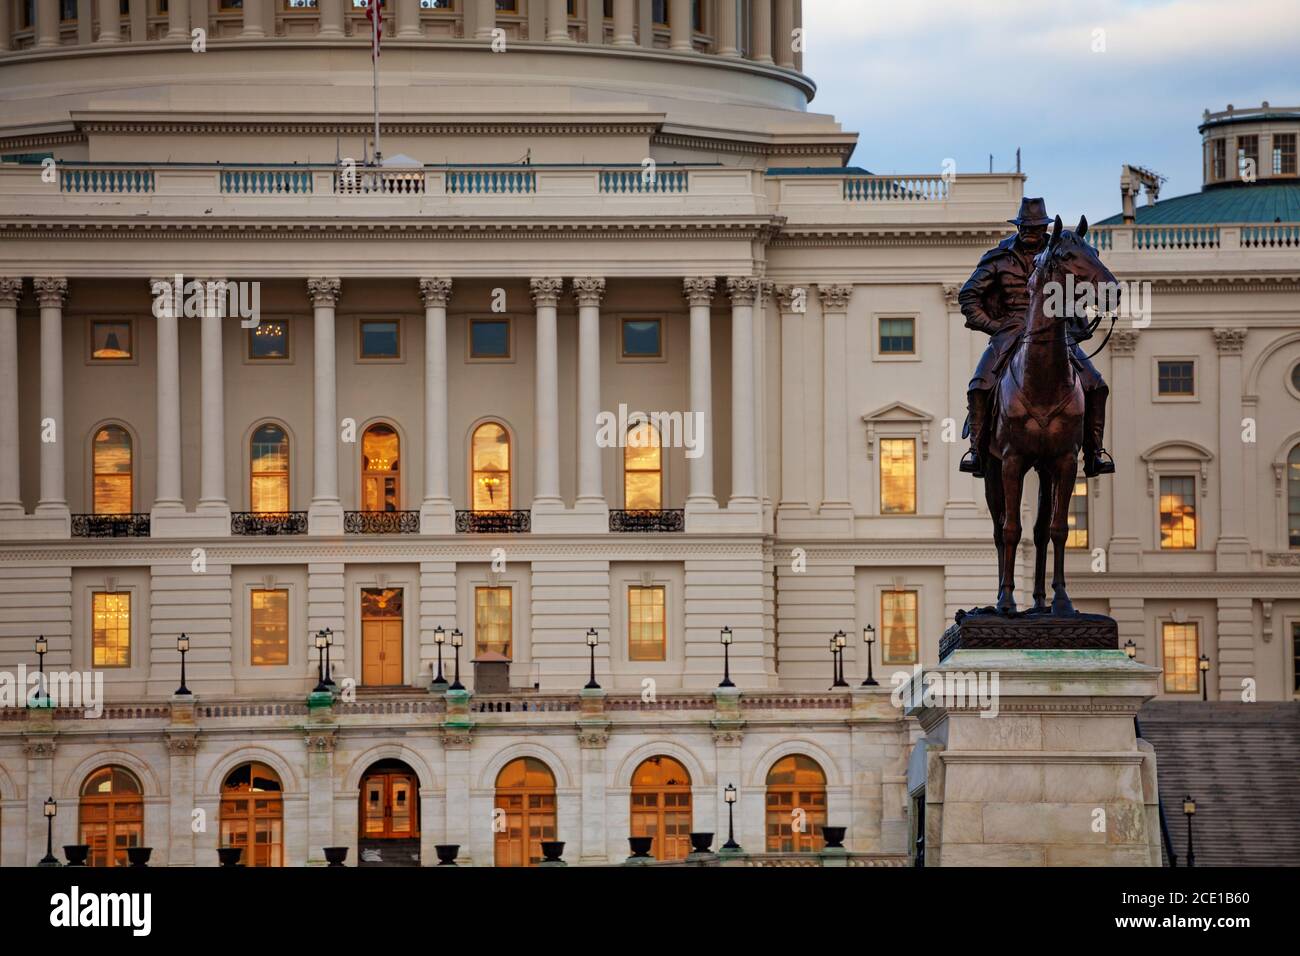 Ulysses S. Grant Gedenkstatue über Säulen des US Capitol Congress Gebäudes auf der National Mall in Washington DC Stockfoto